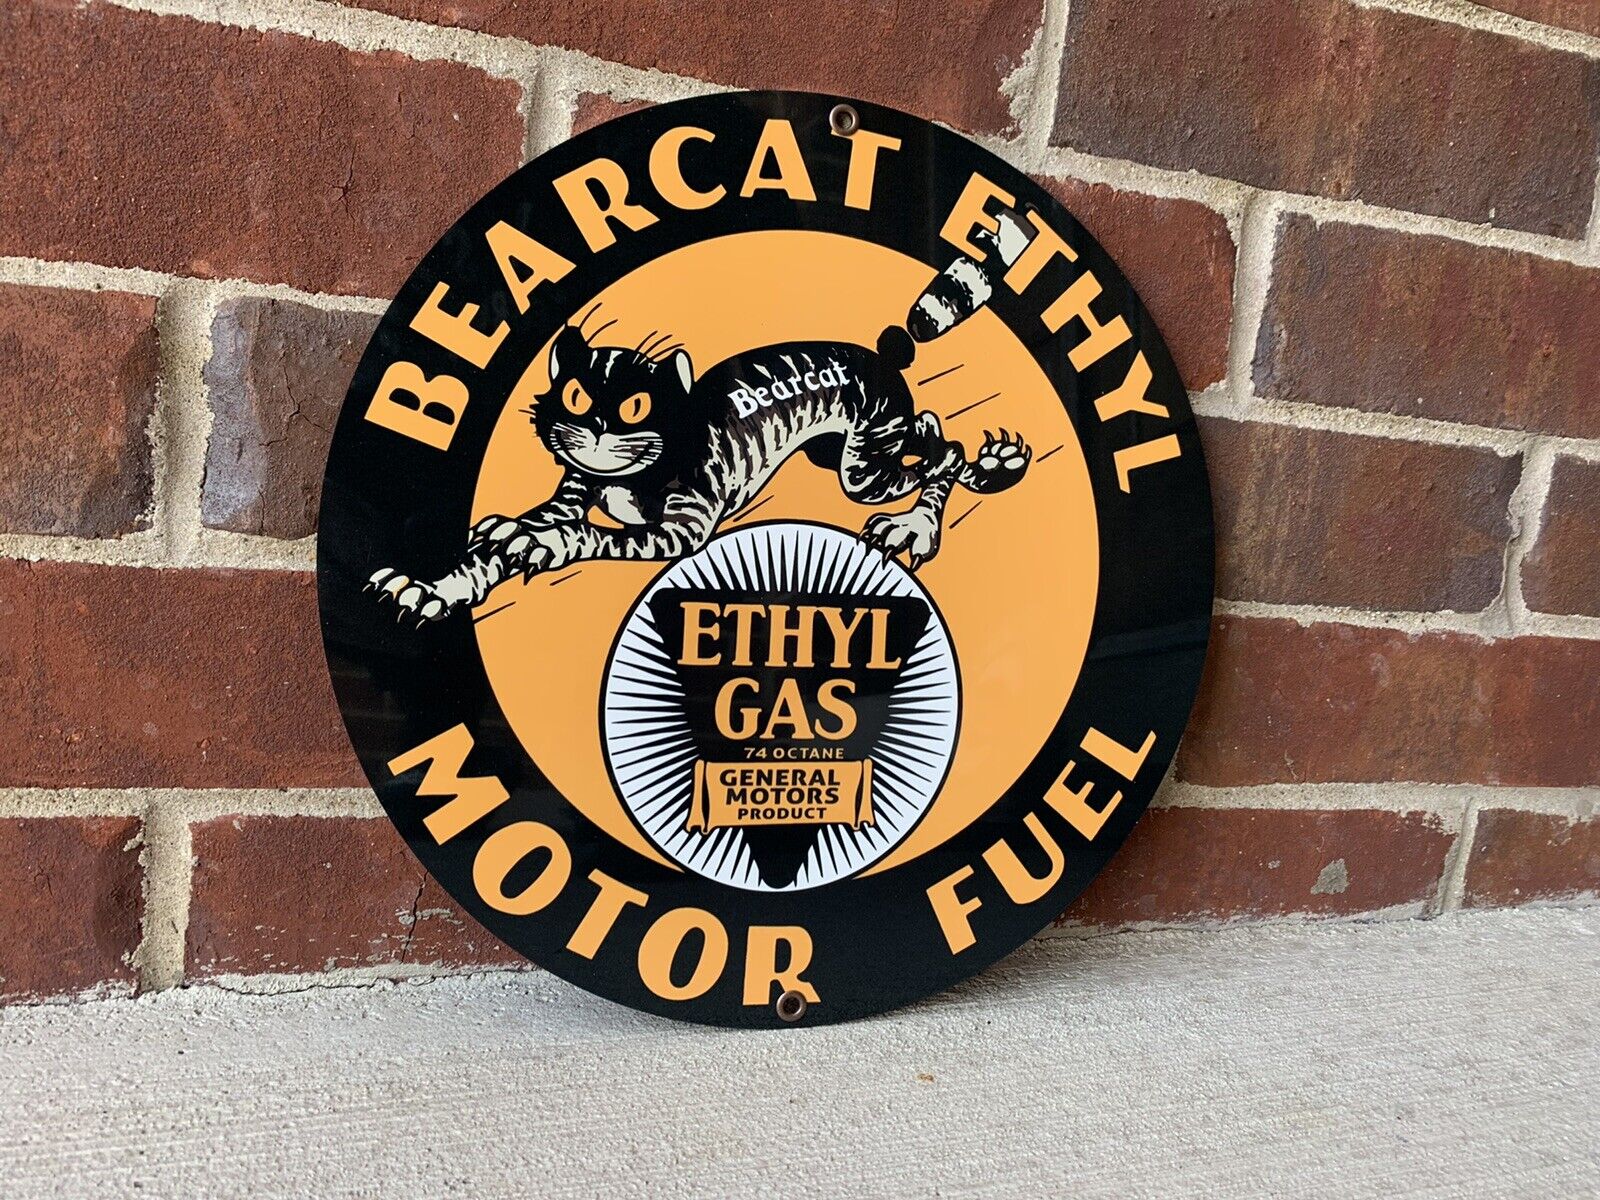 Bearcat ethyl motor fuel gasoline oil garage man cave racing vintage round sign 